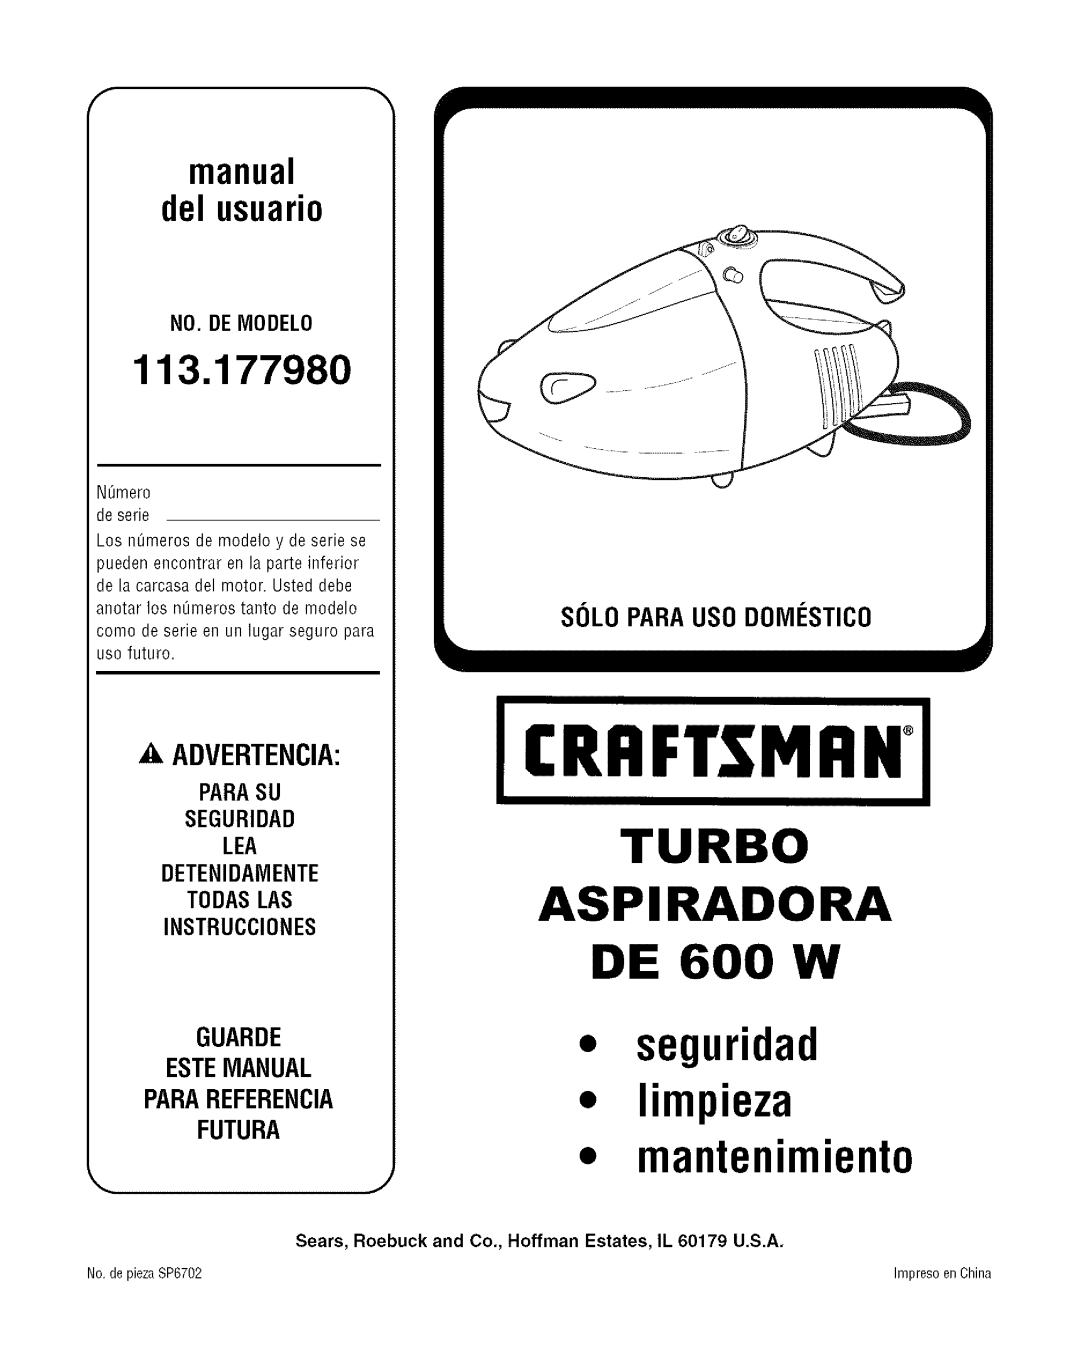 Craftsman 113.17798O CRRFTSMRNo, TURBO ASPIRADORA DE 600 W seguridad limpieza mantenimiento, A Advertencia, No. De Modelo 